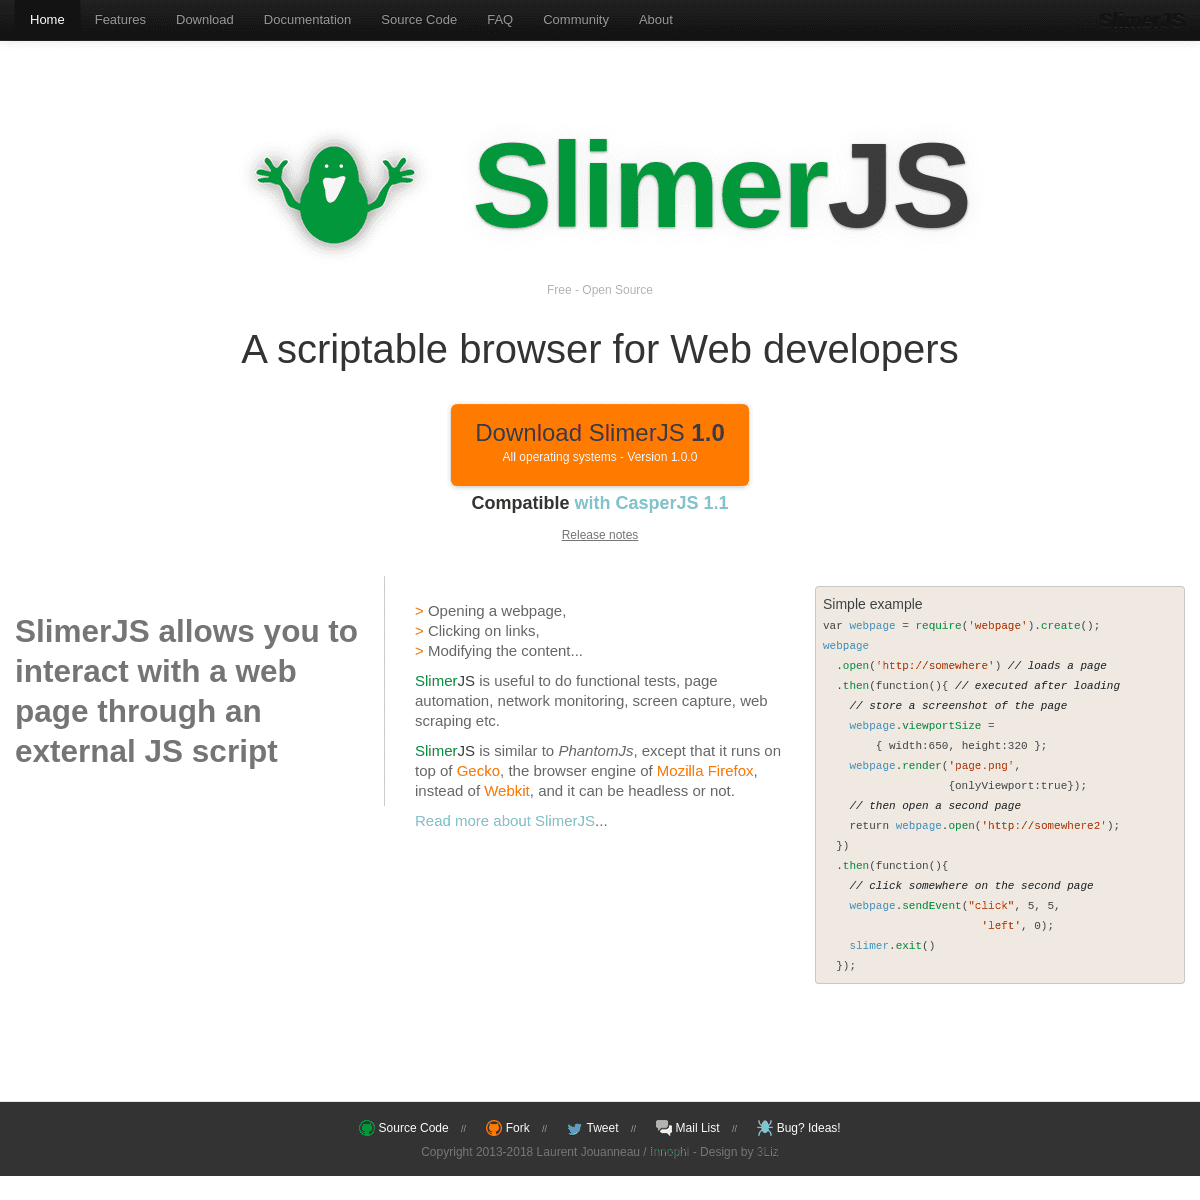 A complete backup of https://slimerjs.org